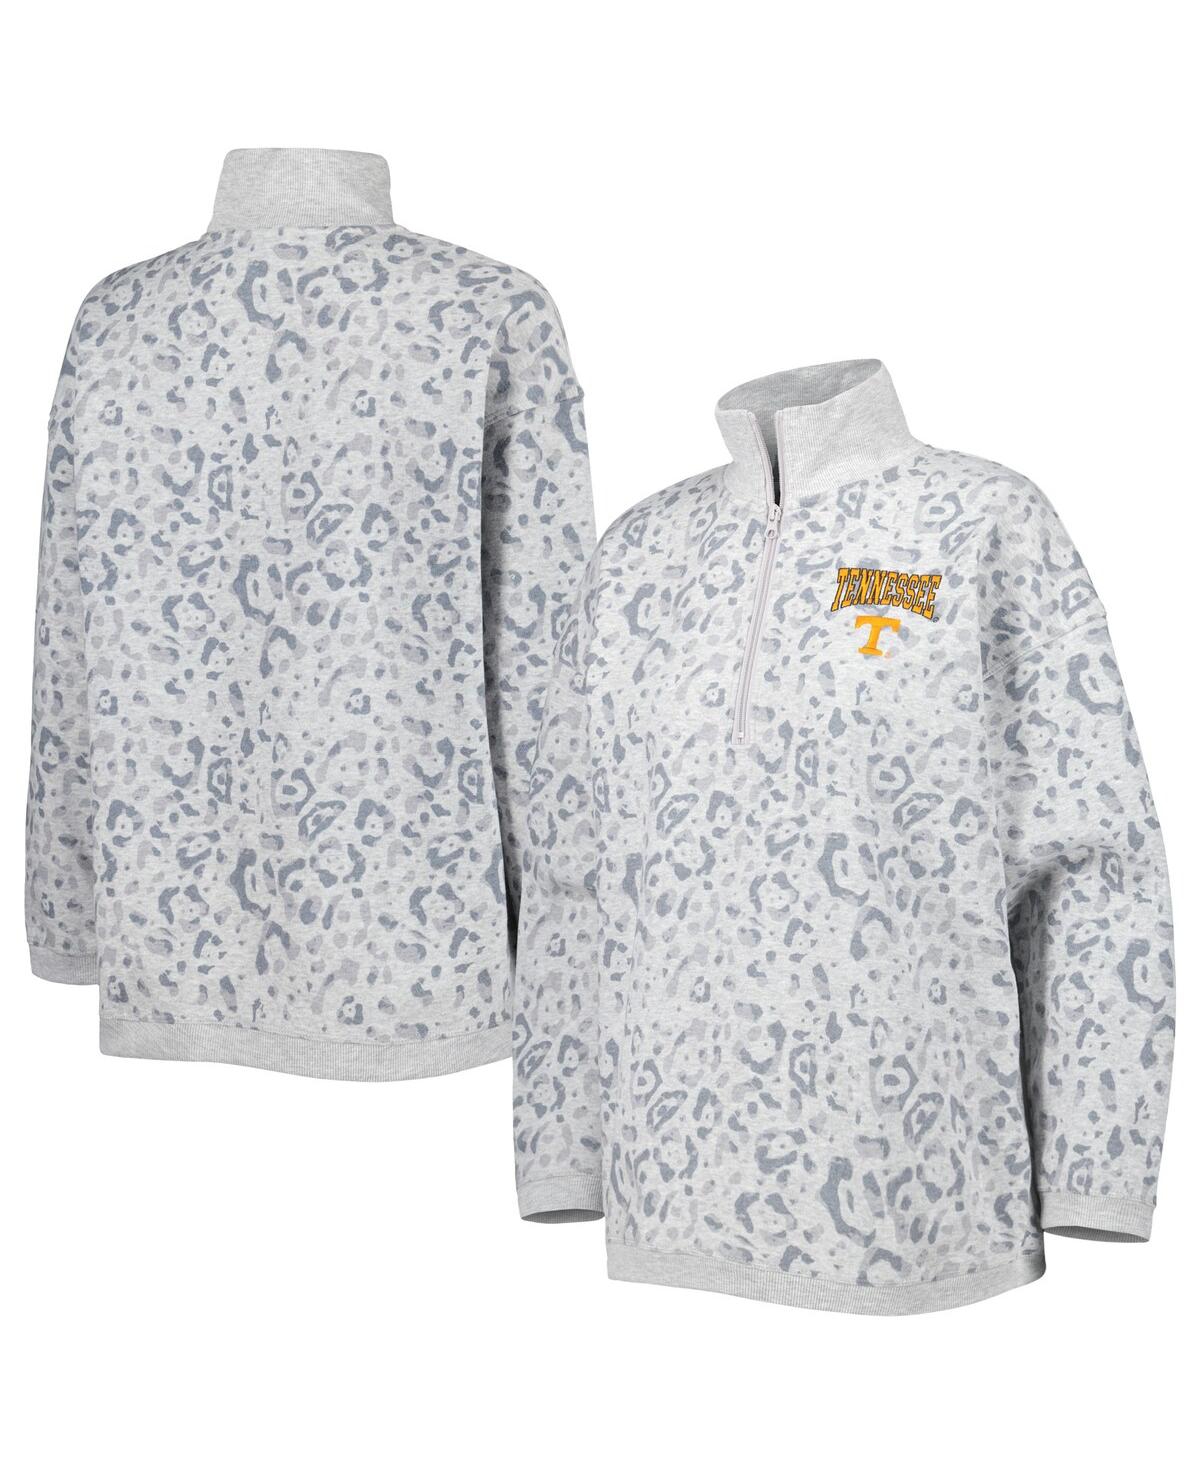 Shop Gameday Couture Women's  Heather Gray Tennessee Volunteers Leopard Quarter-zip Sweatshirt